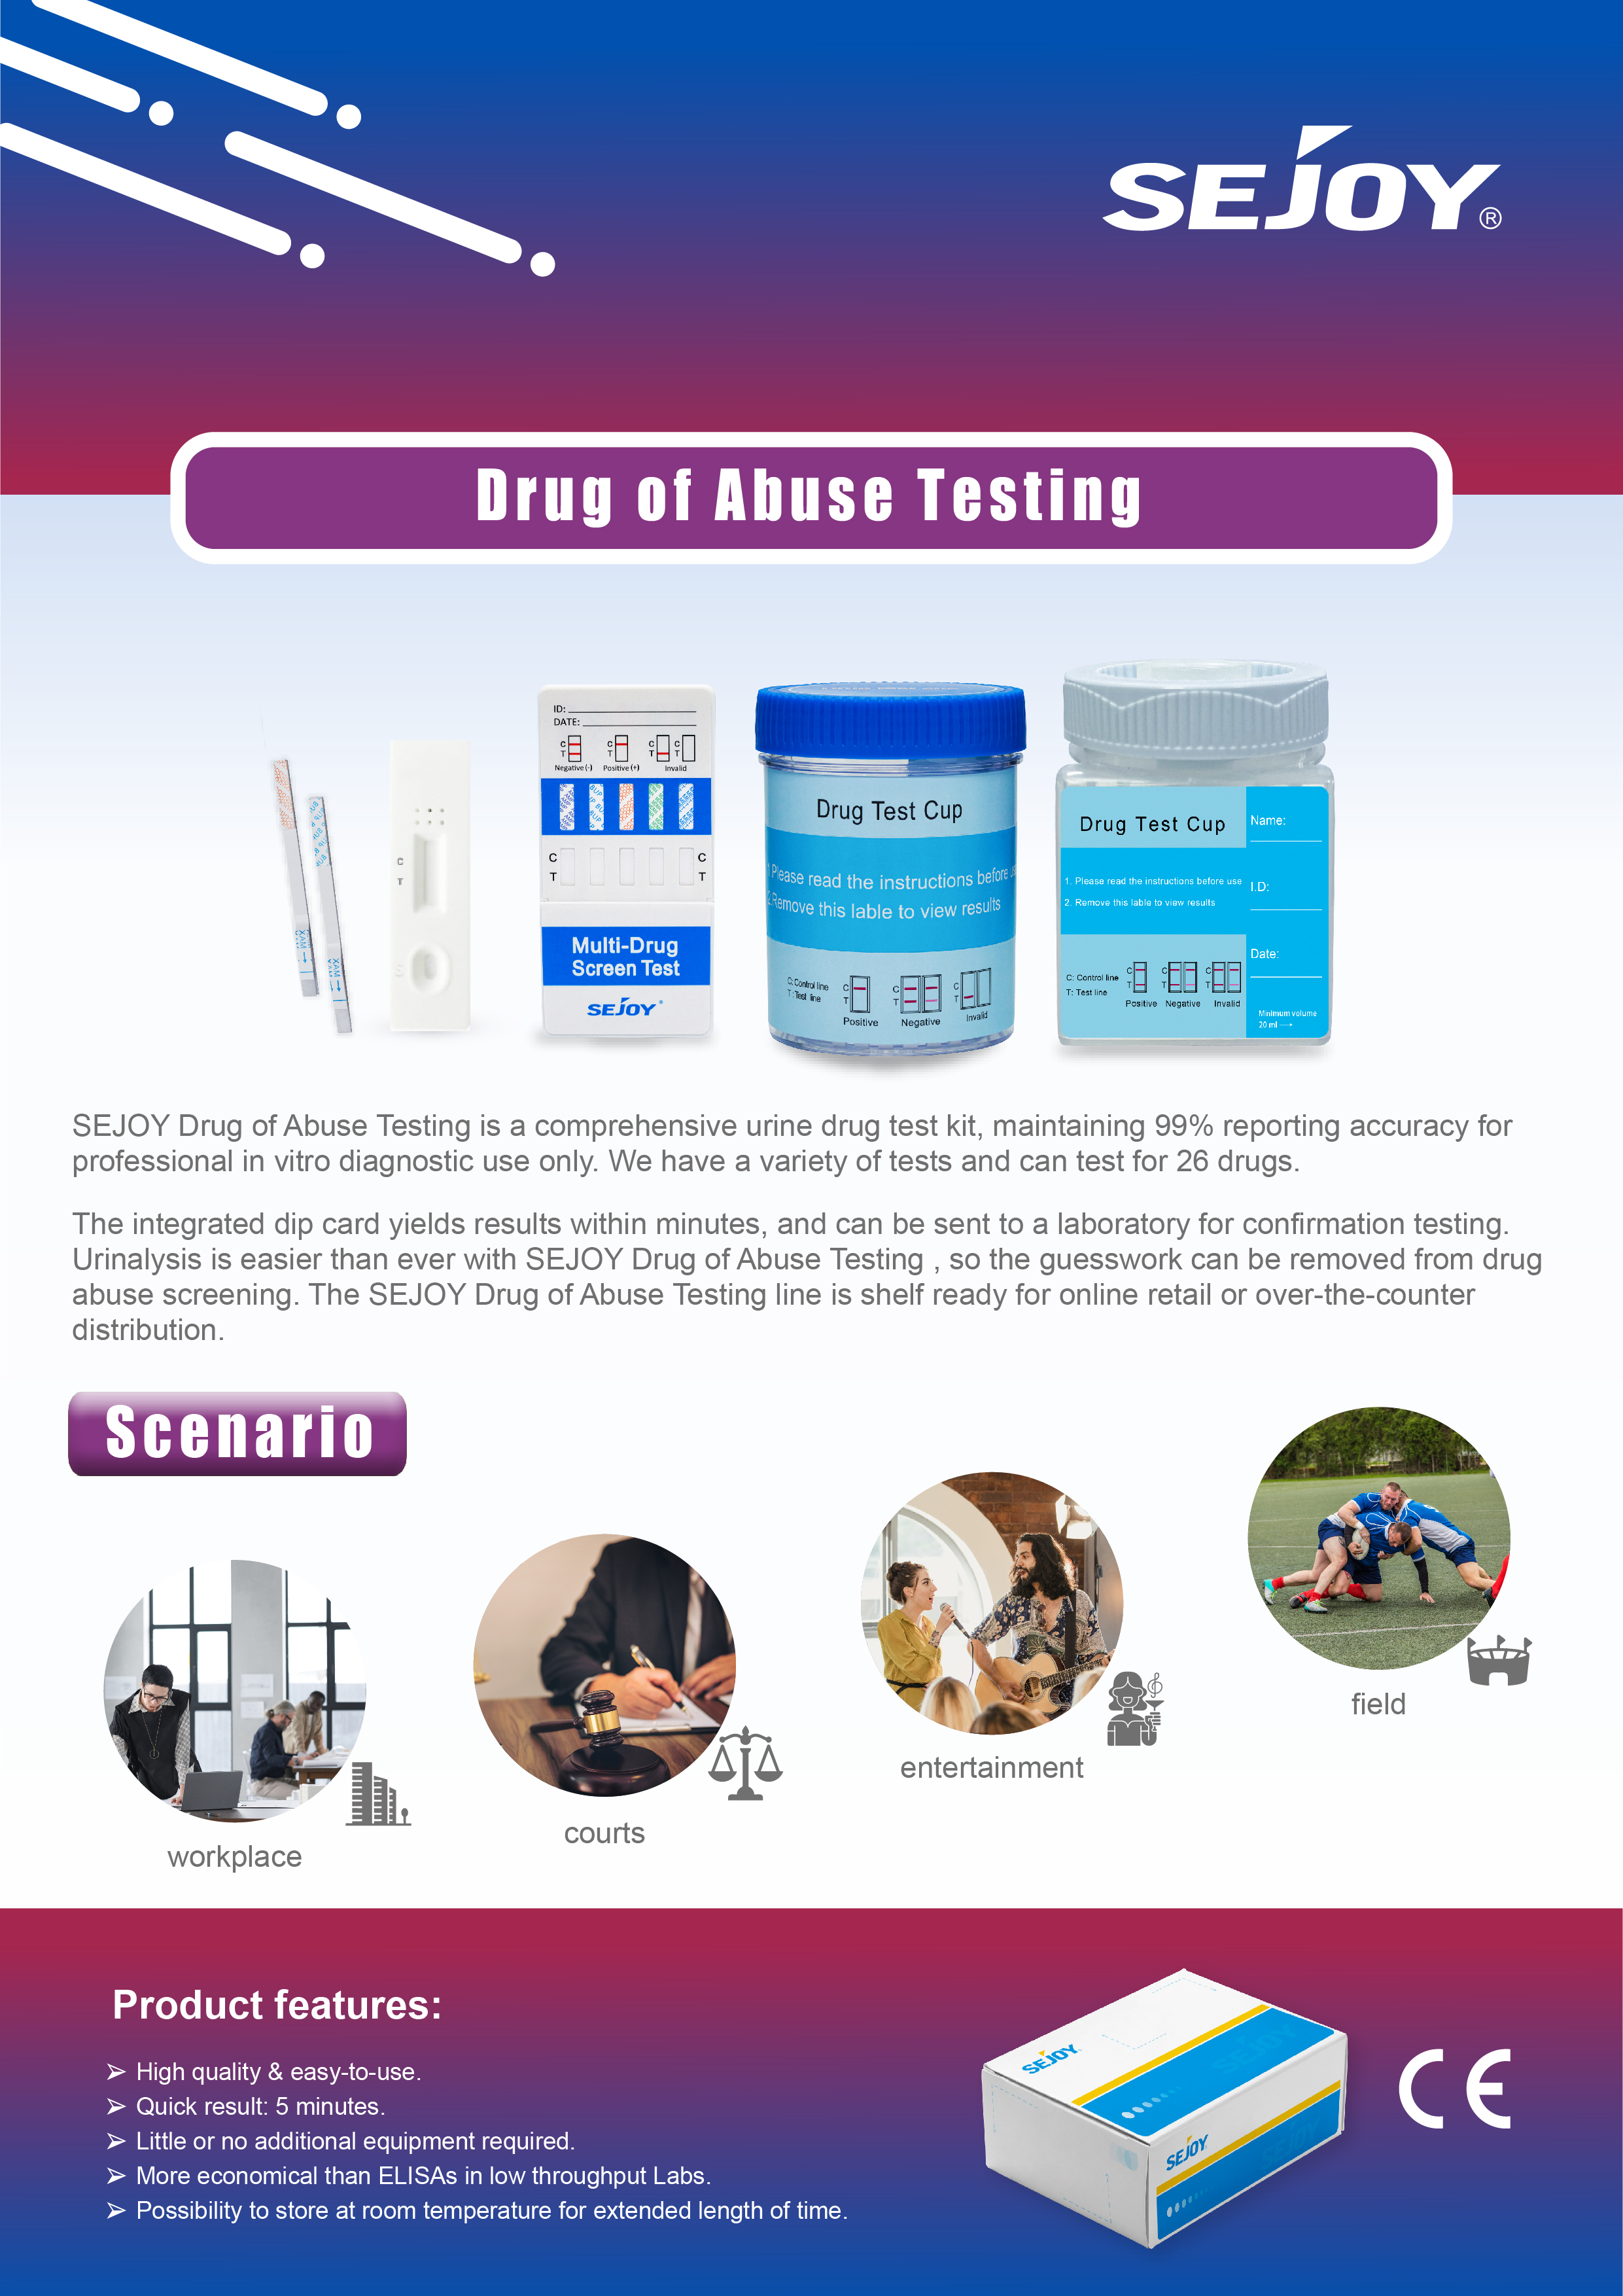 Drogen vu Mëssbrauch Screening (DOAS)